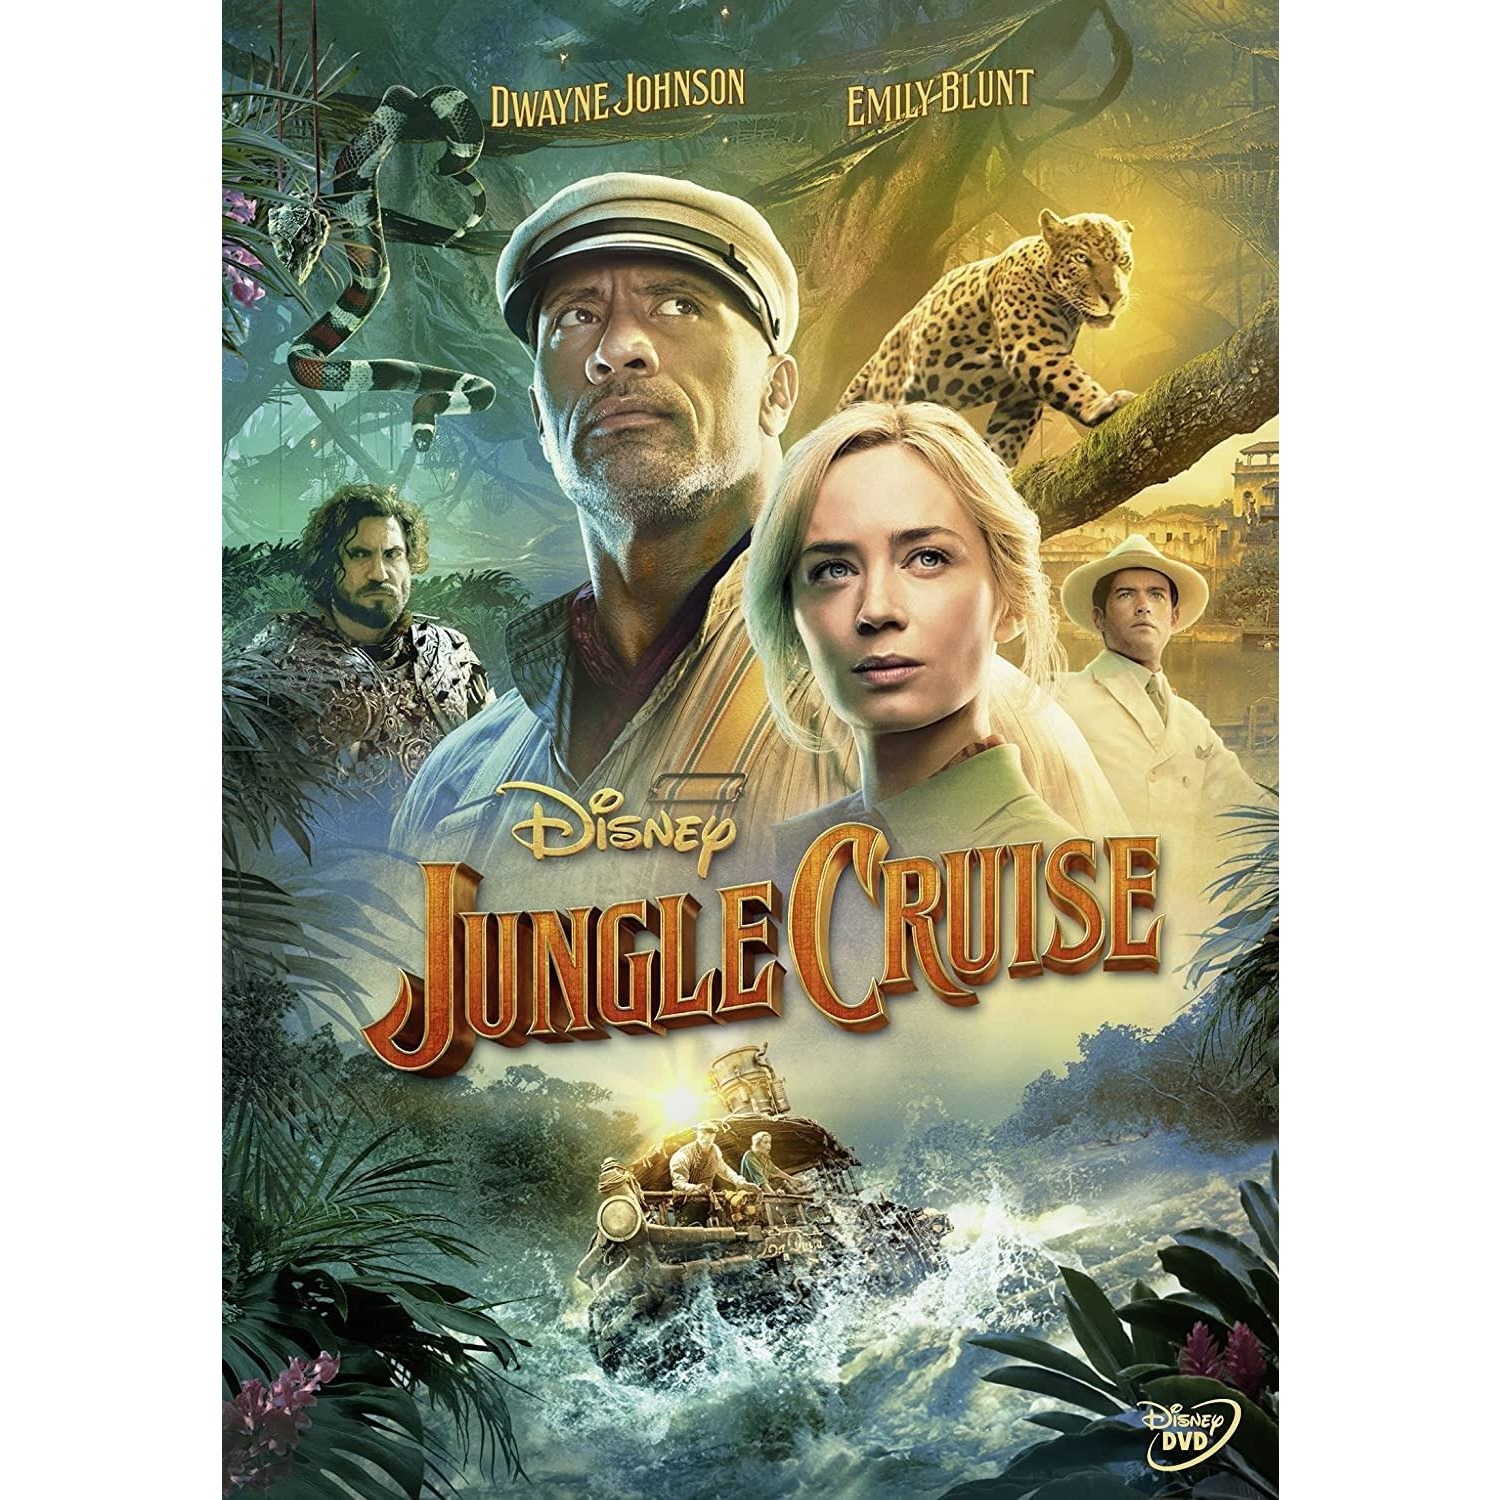 Immagine per DVD Jungle Cruise da DIMOStore